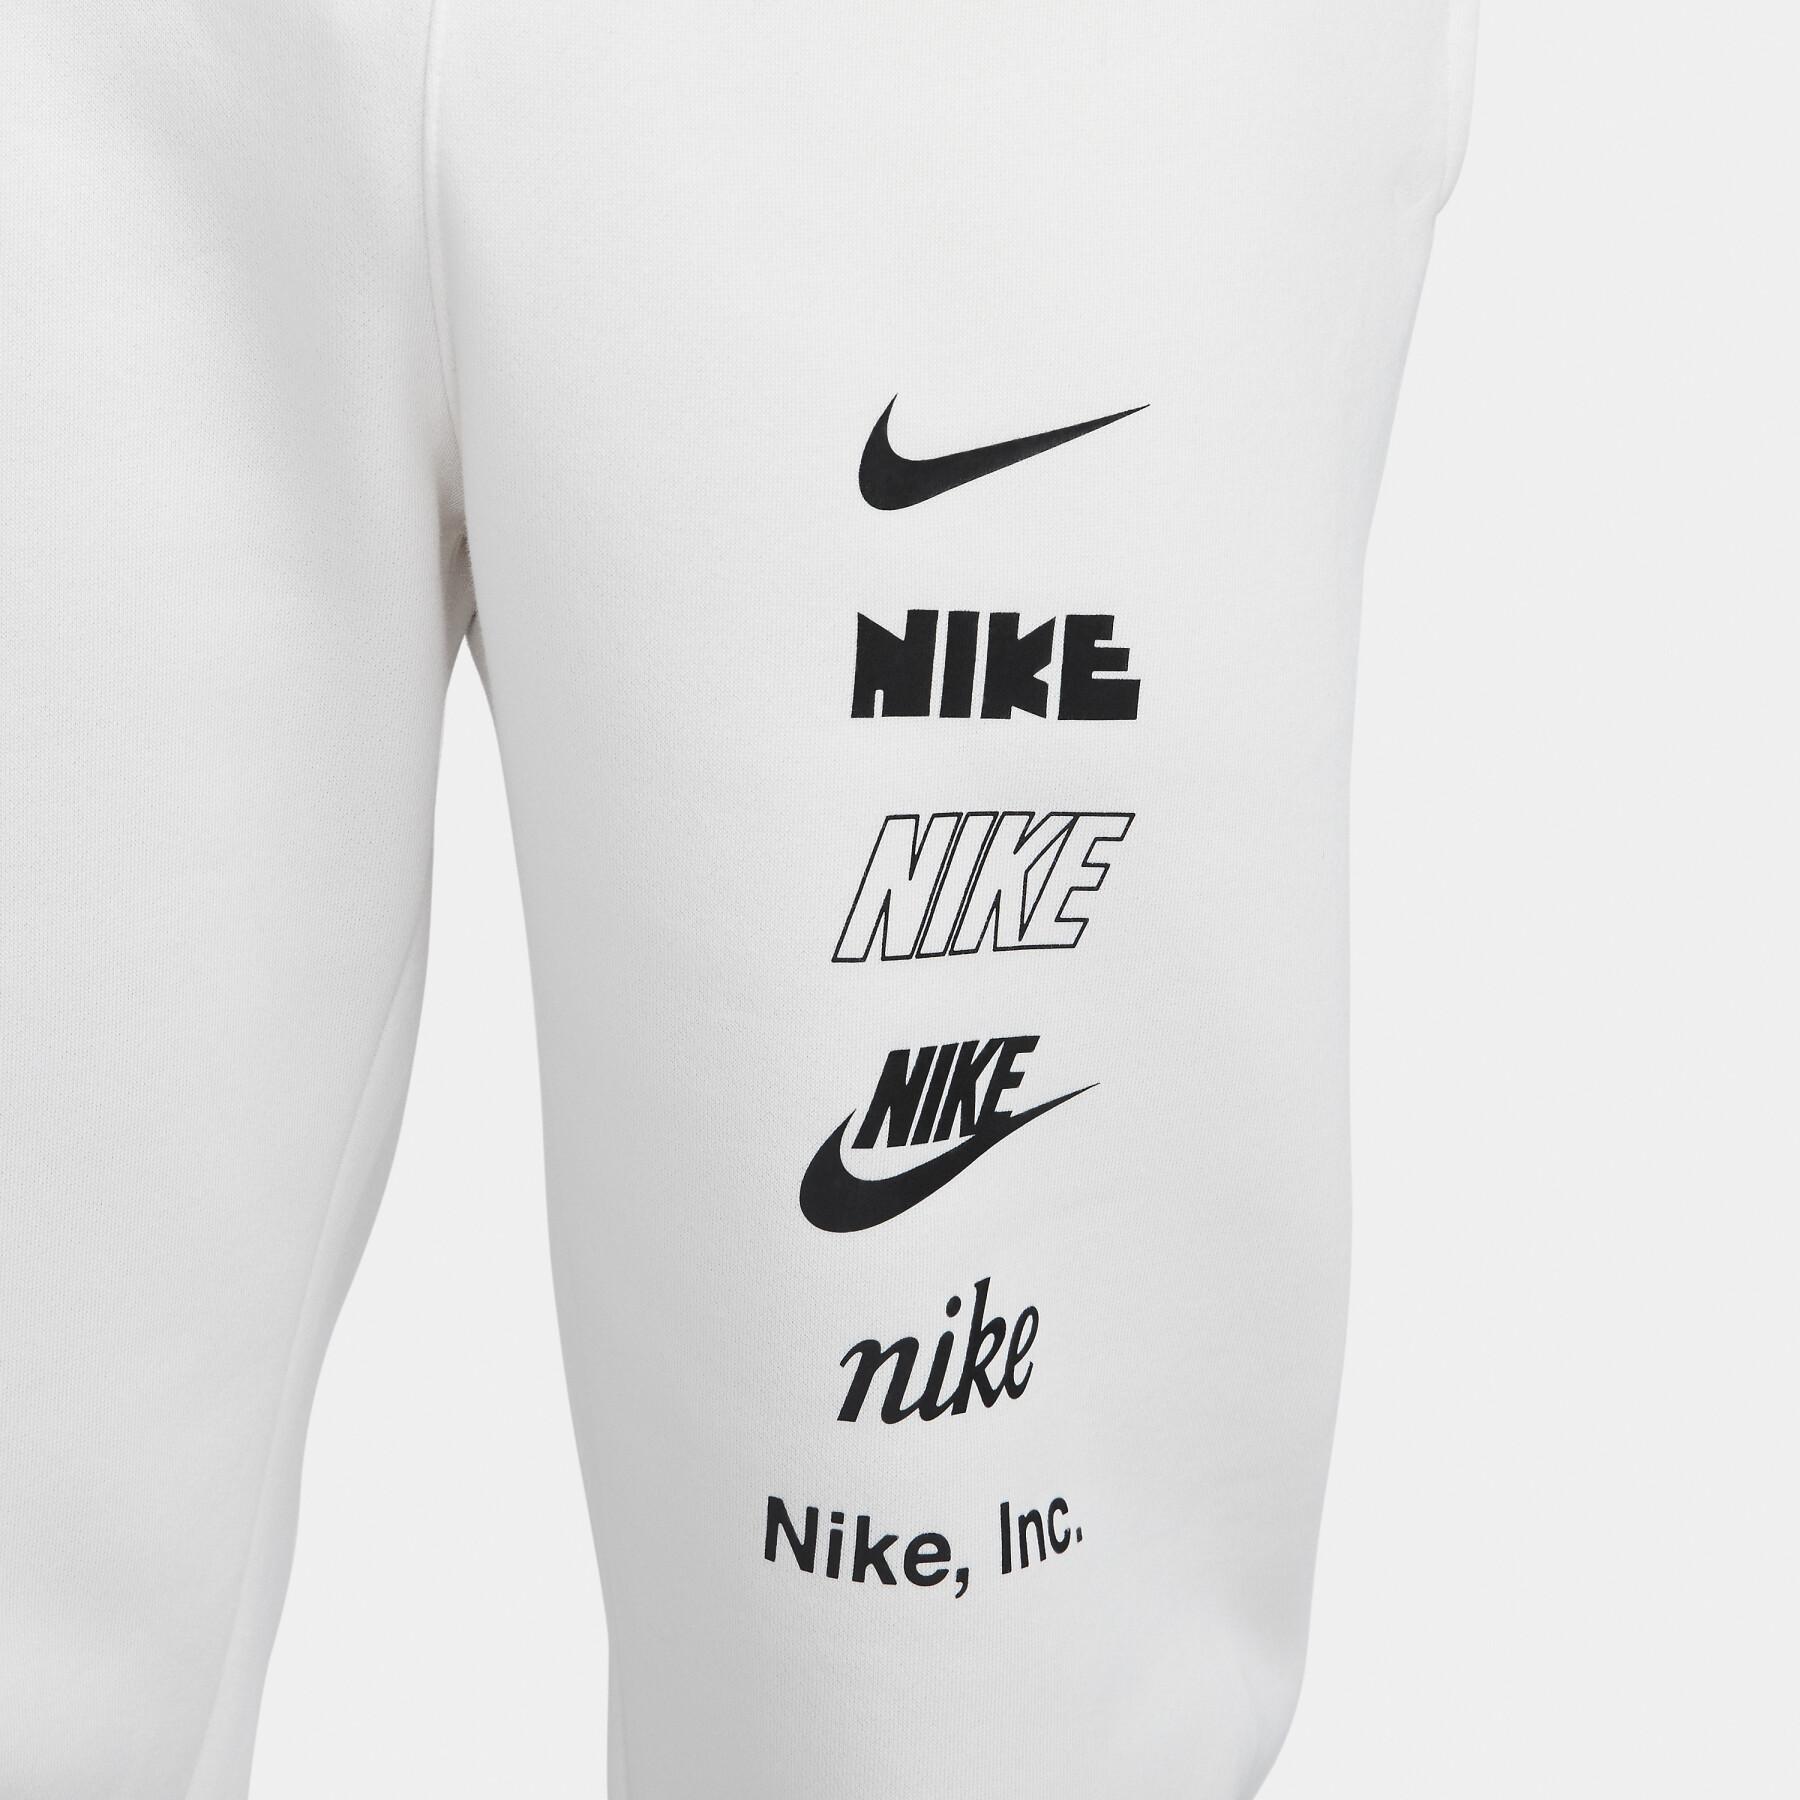 Jogging Nike